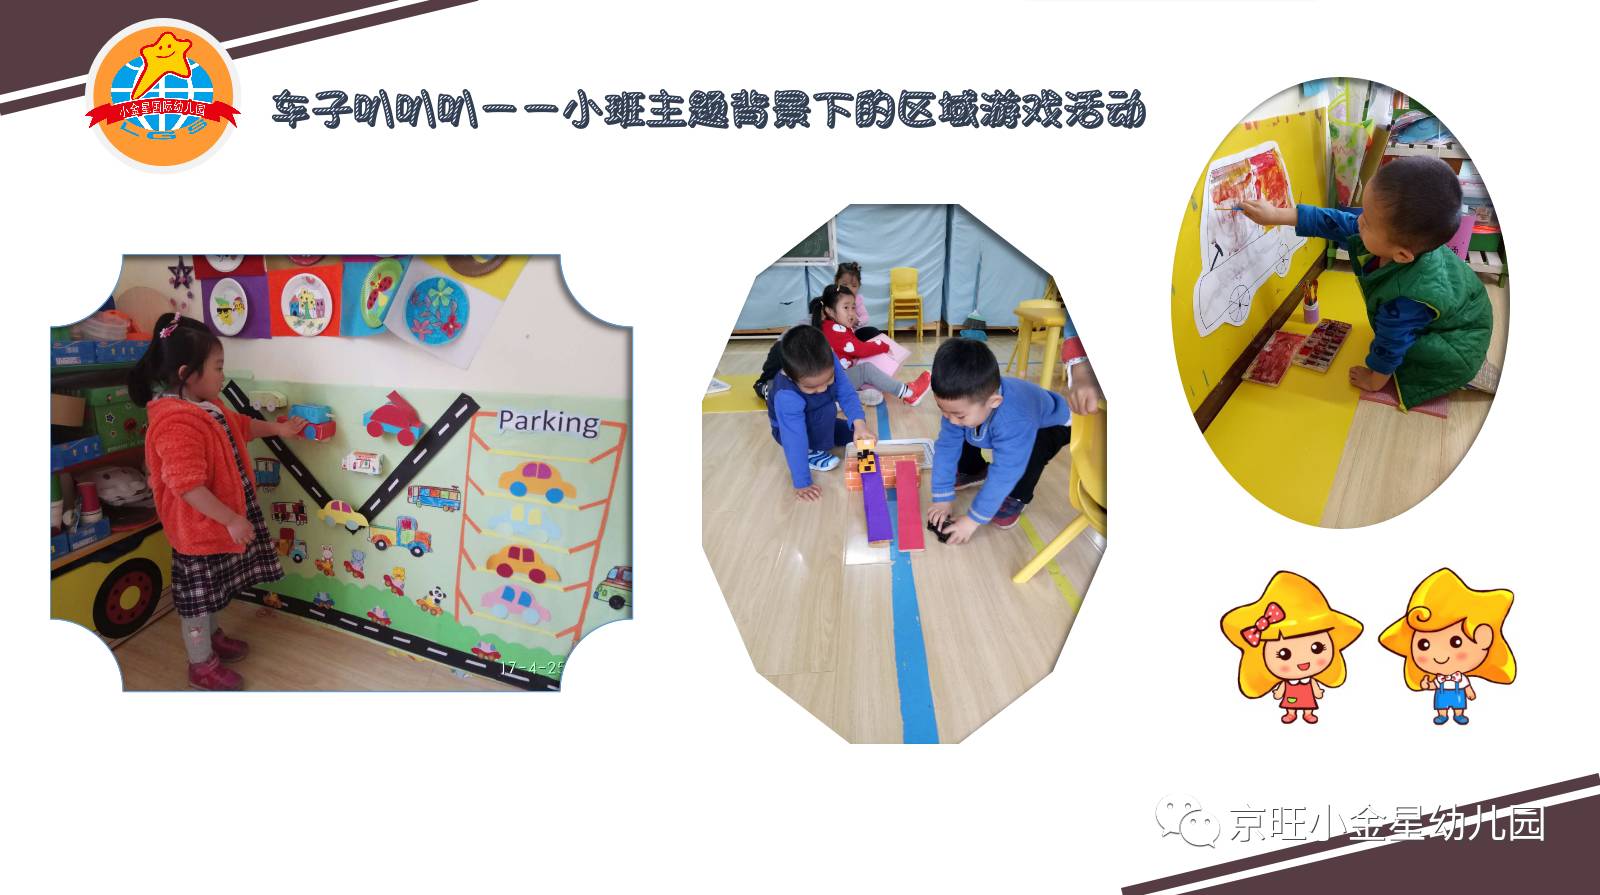 北京京旺小金星幼儿园——"车子叭叭叭"小班主题背景下的区域游戏活